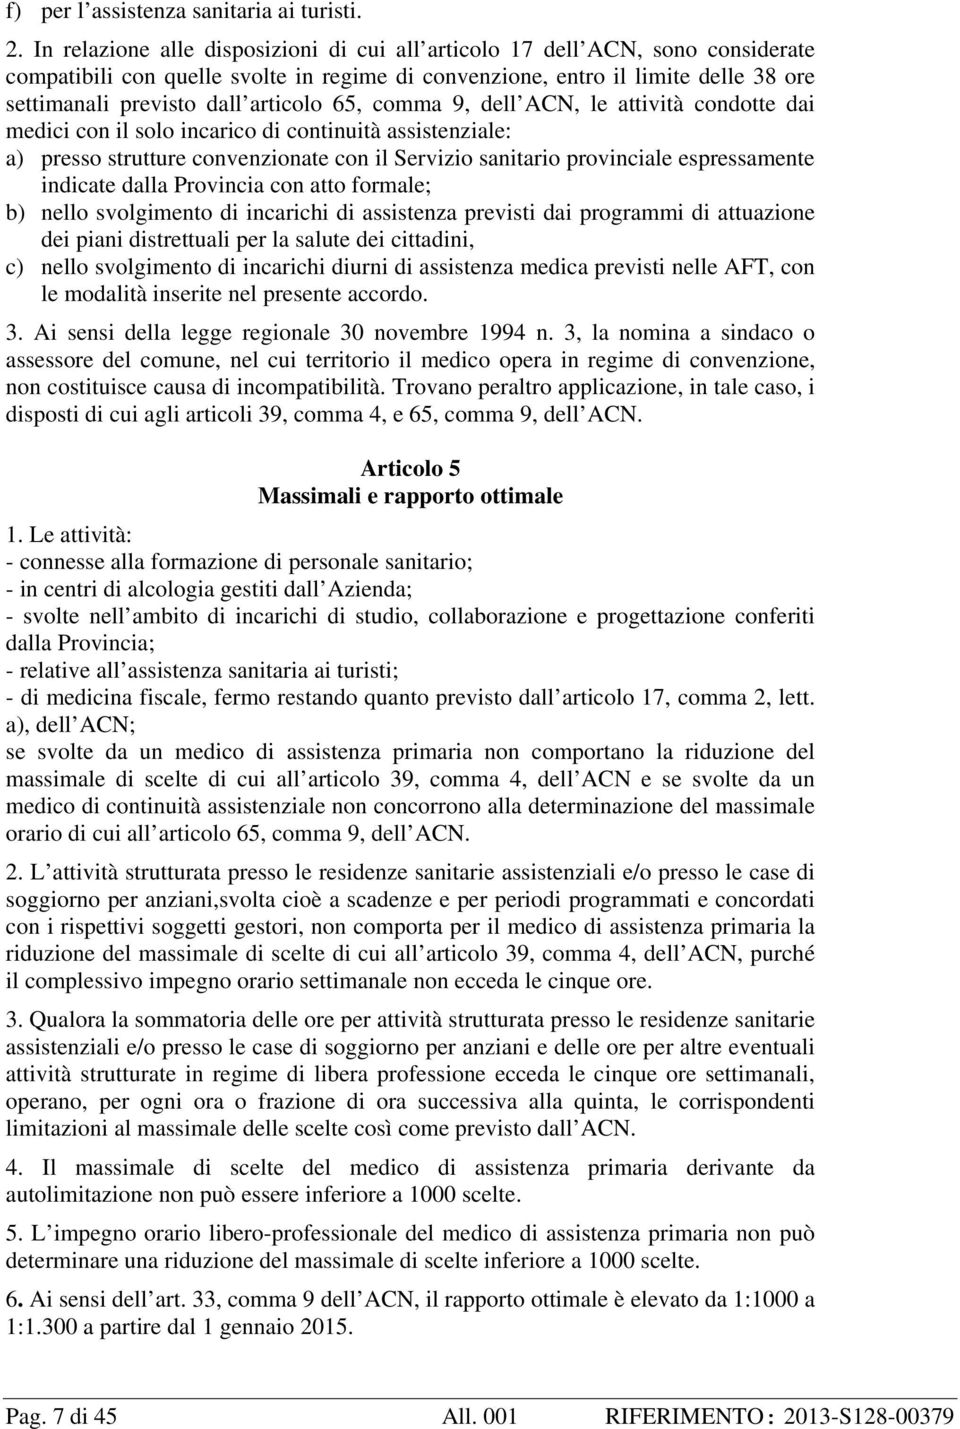 articolo 65, comma 9, dell ACN, le attività condotte dai medici con il solo incarico di continuità assistenziale: a) presso strutture convenzionate con il Servizio sanitario provinciale espressamente